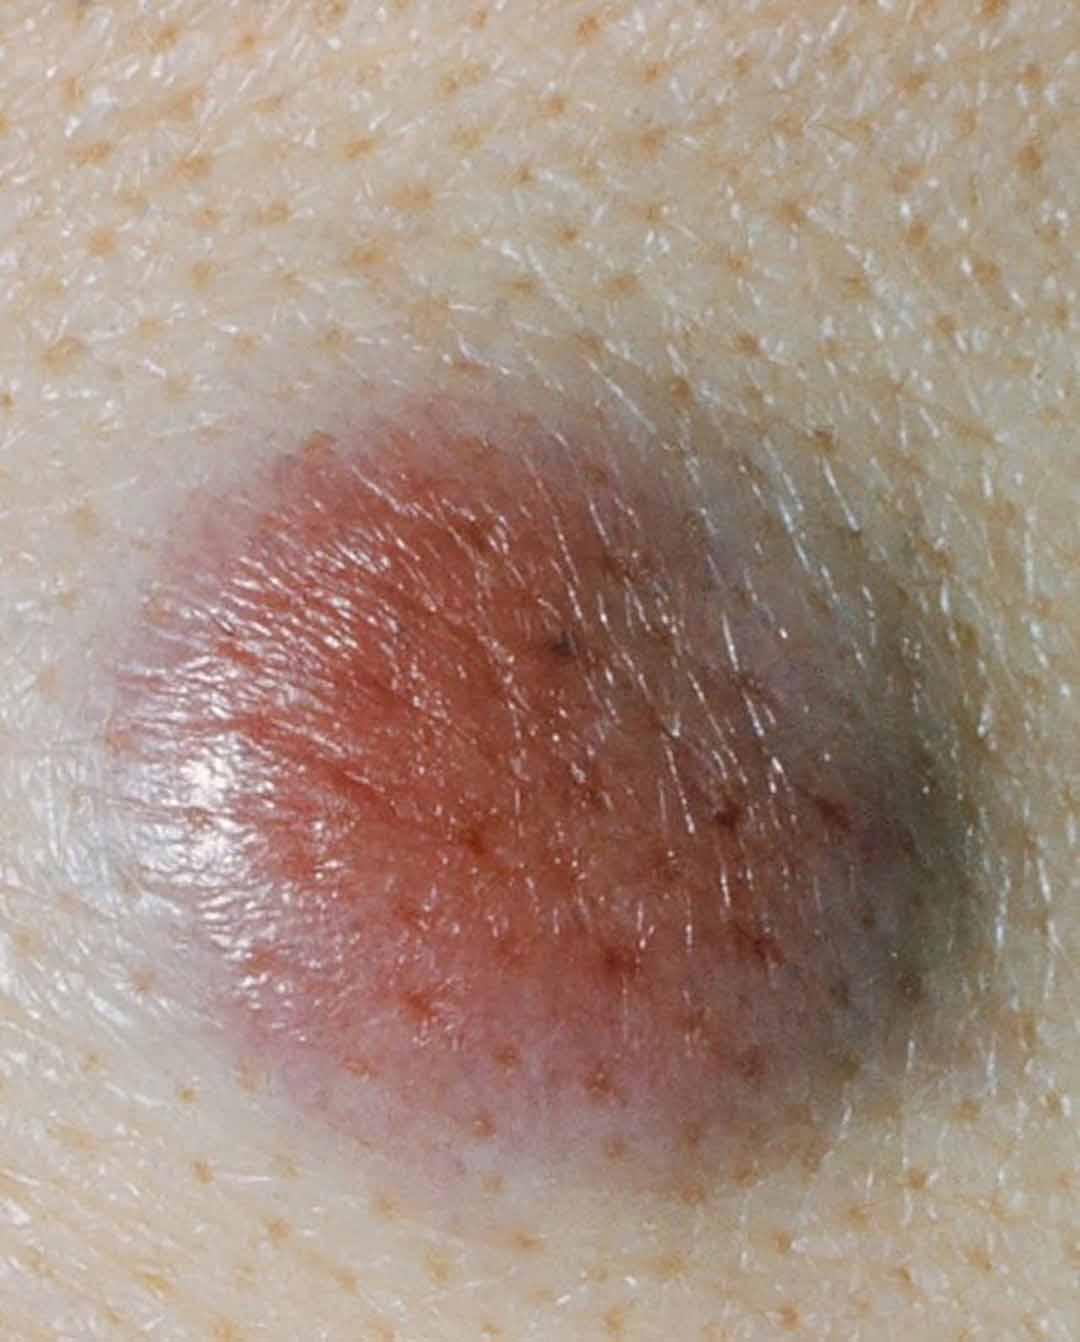 Ung thư tế bào gai thường xuất hiện ở vùng da có tiếp xúc với ánh nắng mặt.